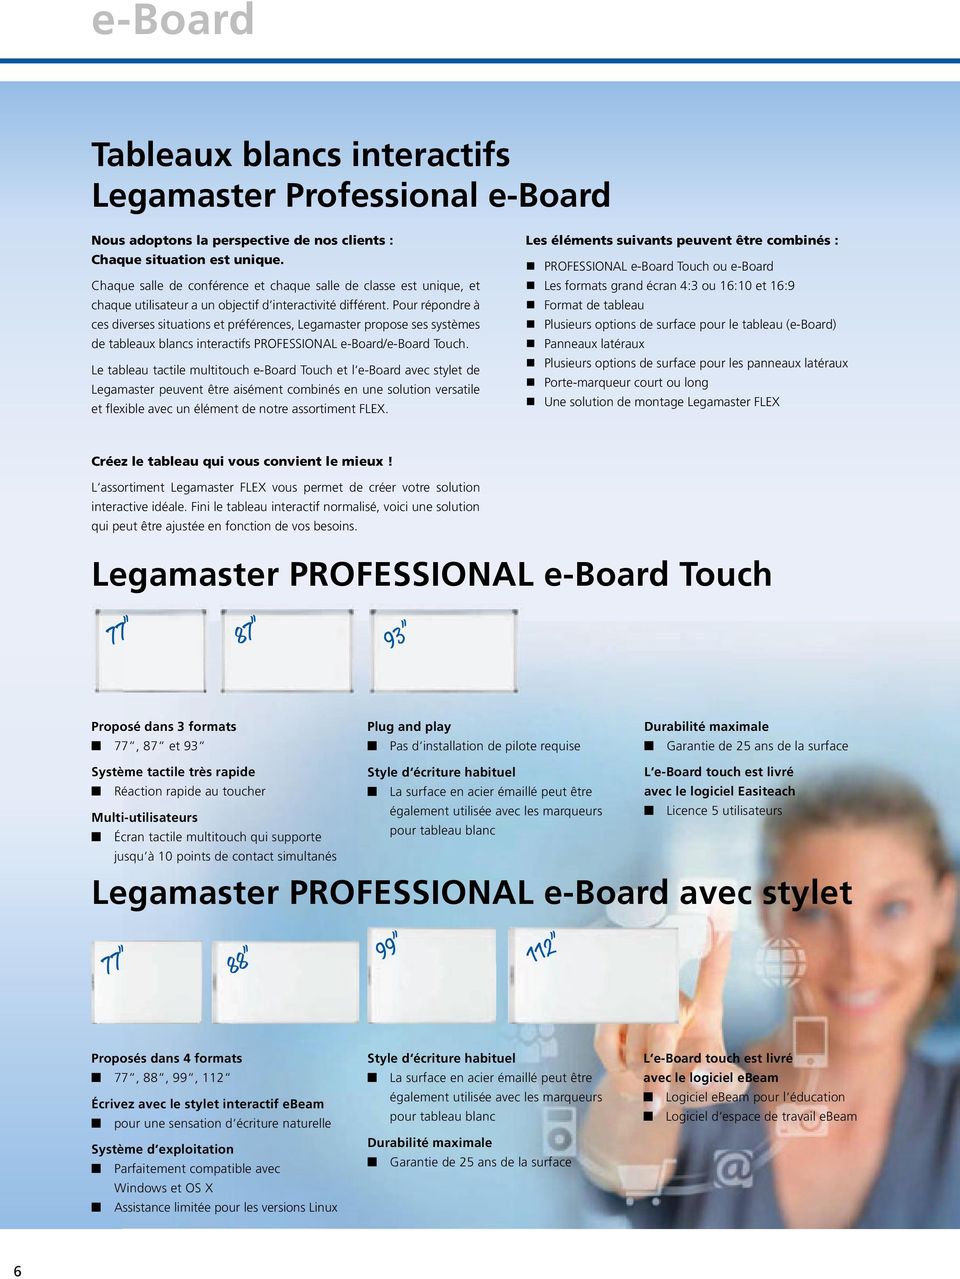 Pour répondre à ces diverses situations et préférences, Legamaster propose ses systèmes de tableaux blancs interactifs PROFESSIONAL e-board/e-board Touch.